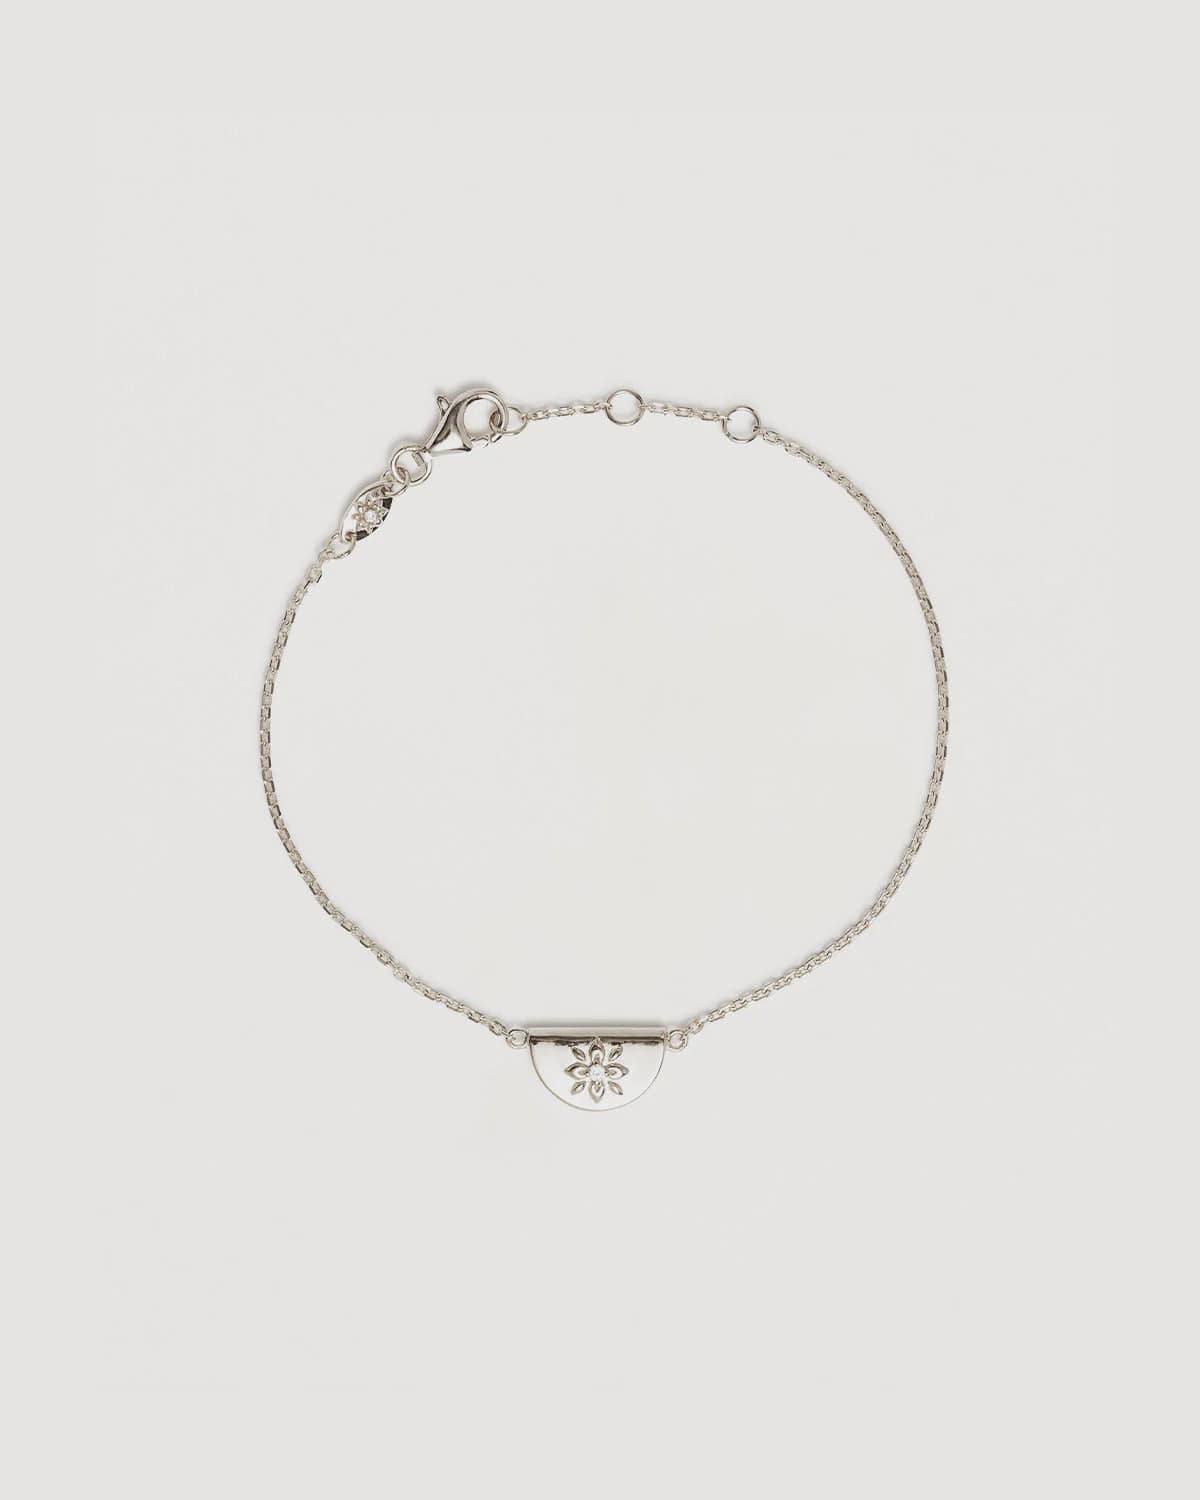 By Charlotte Bracelets By Charlotte | Lotus Bracelet - Sterling Silver